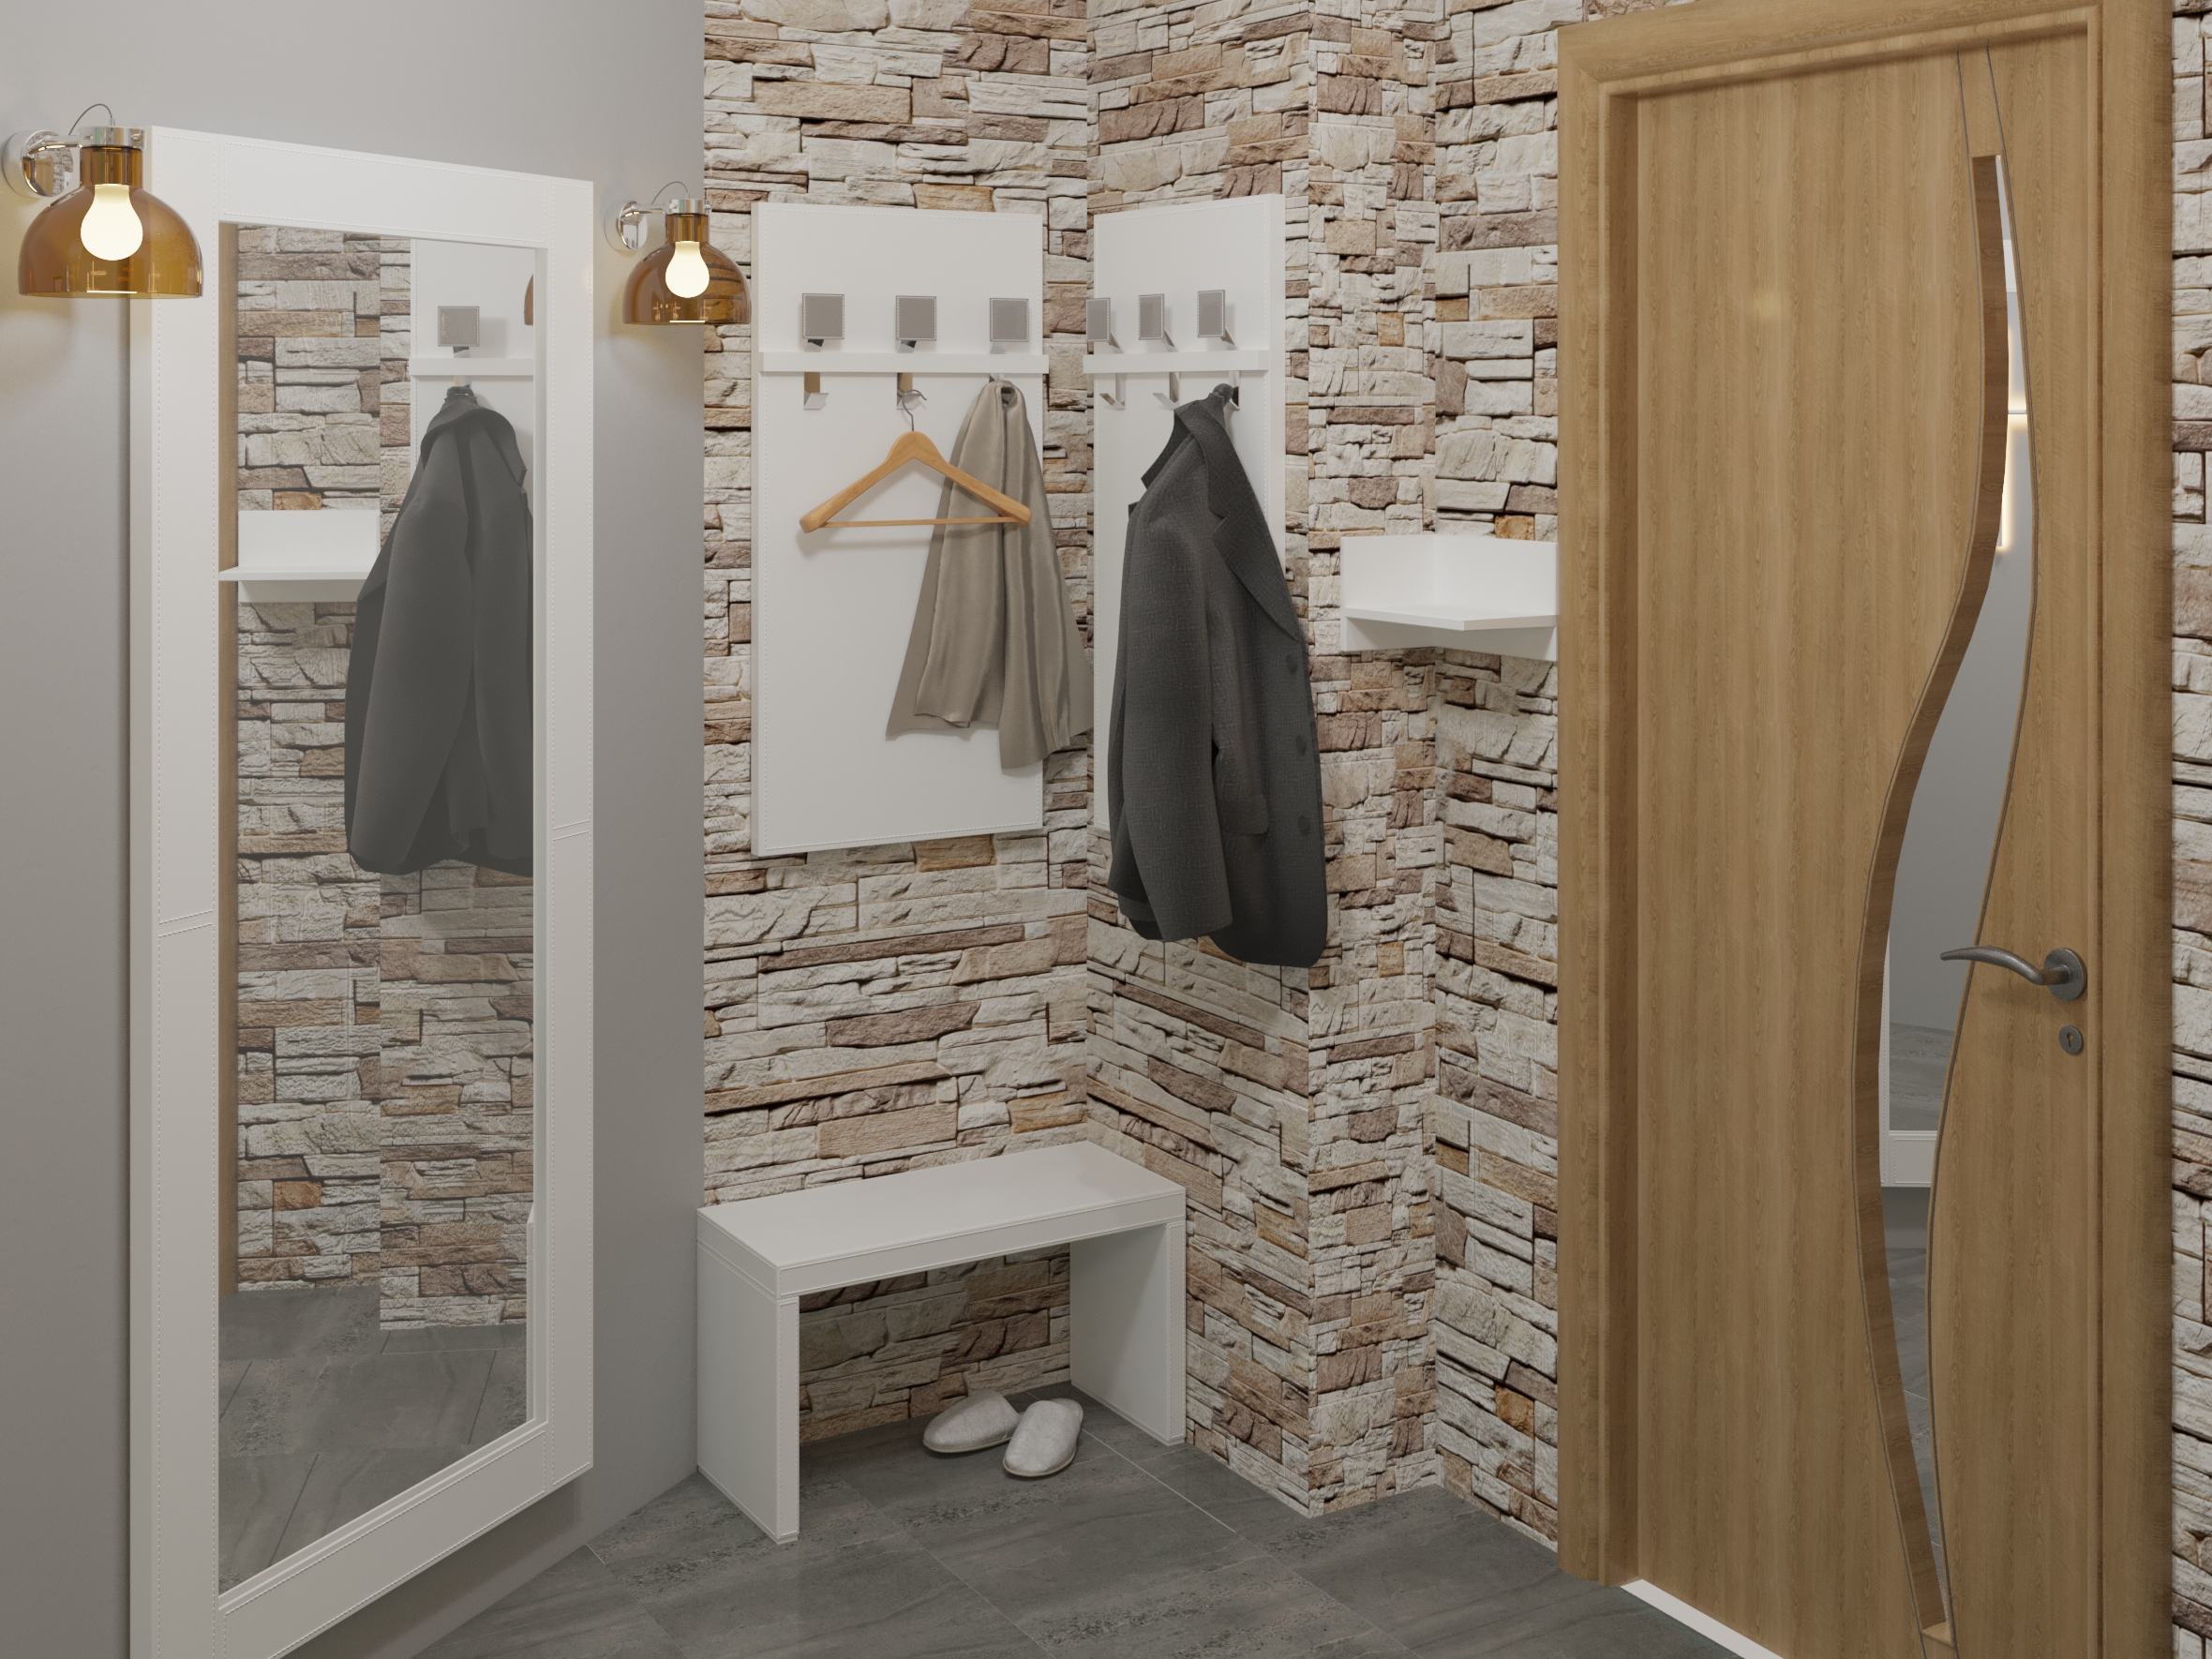 Однокомнатная квартира-студия в 3d max corona render изображение